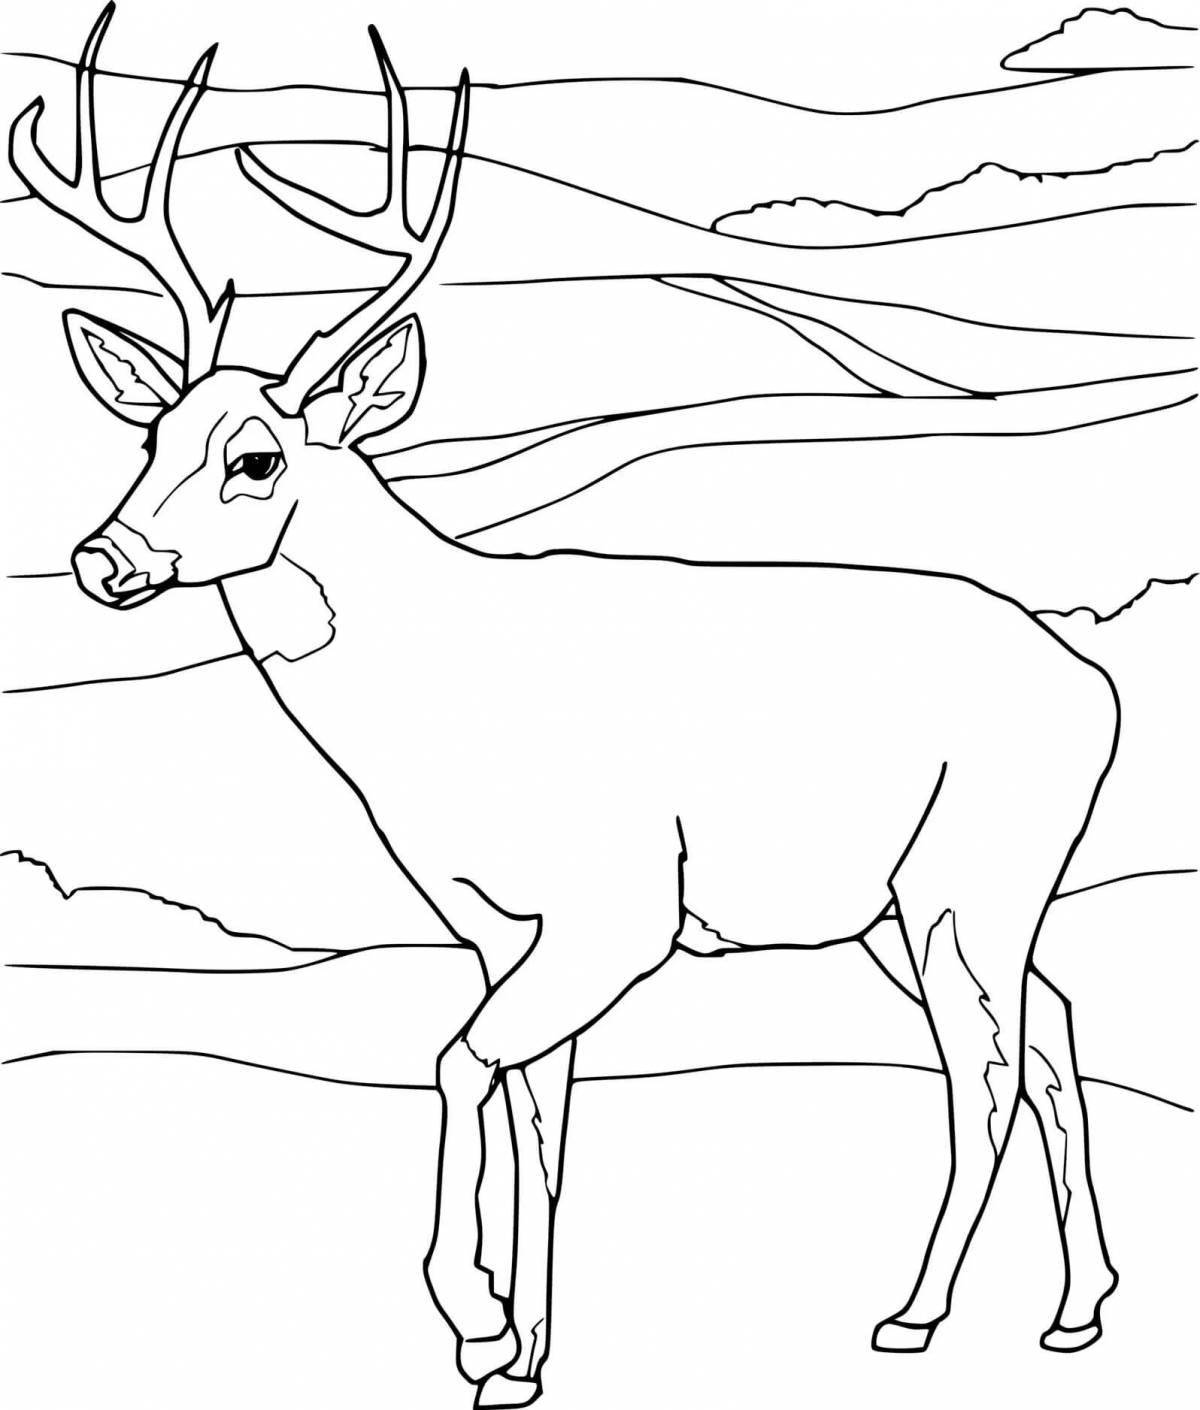 Coloring page nice deer